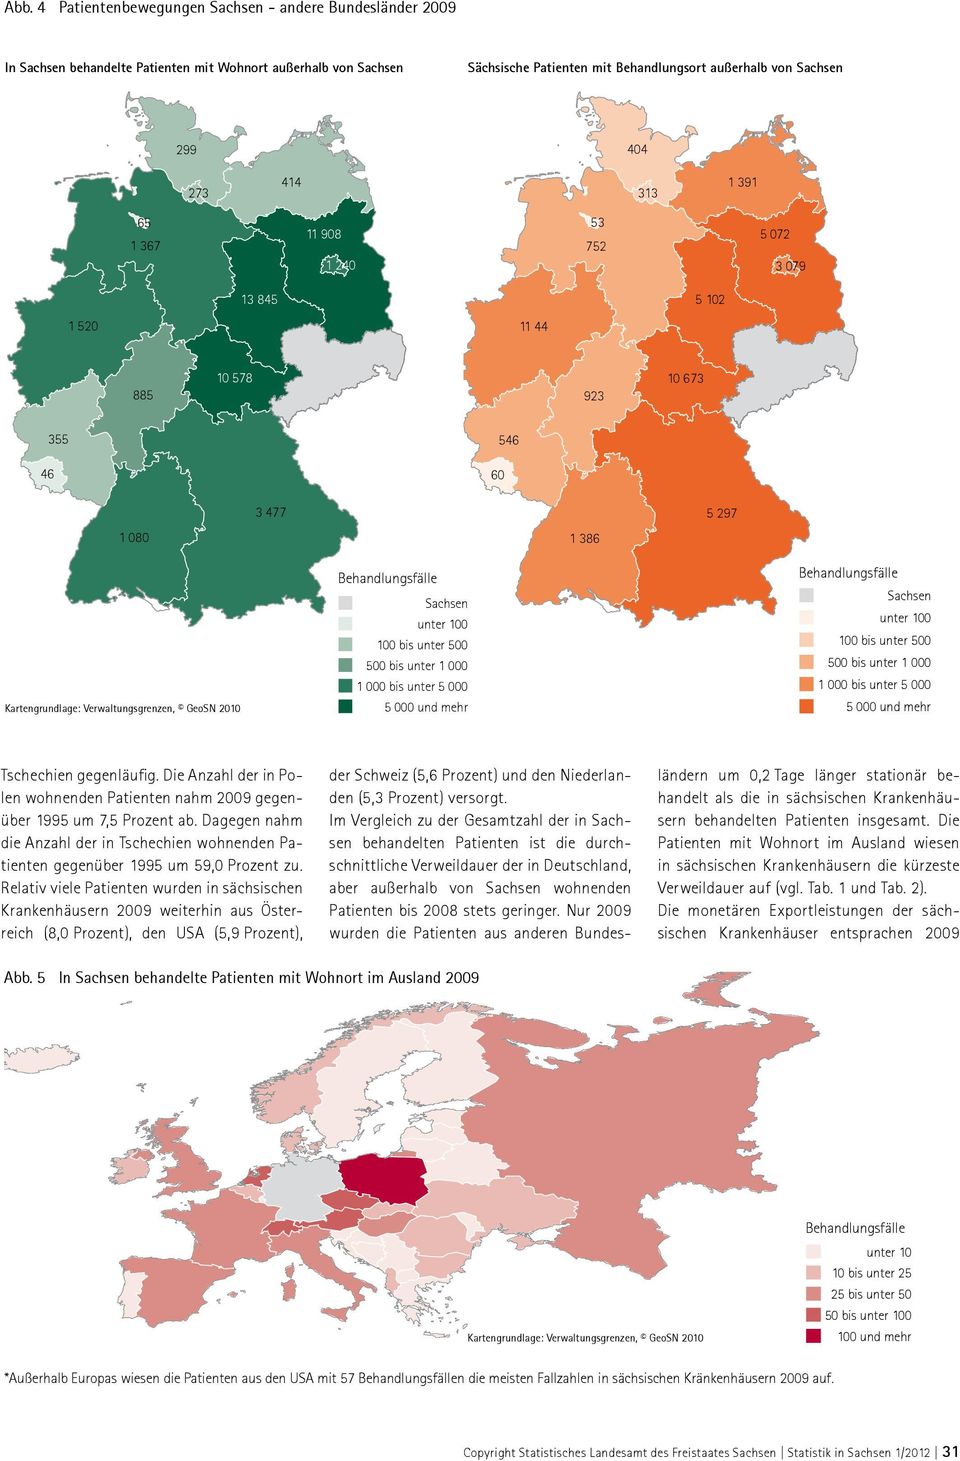 Verwaltungsgrenzen, GeoSN 2010 Tschechien gegenläufig. Die Anzahl der in Polen wohnenden Patienten nahm 2009 gegenüber 1995 um 7,5 Prozent ab.